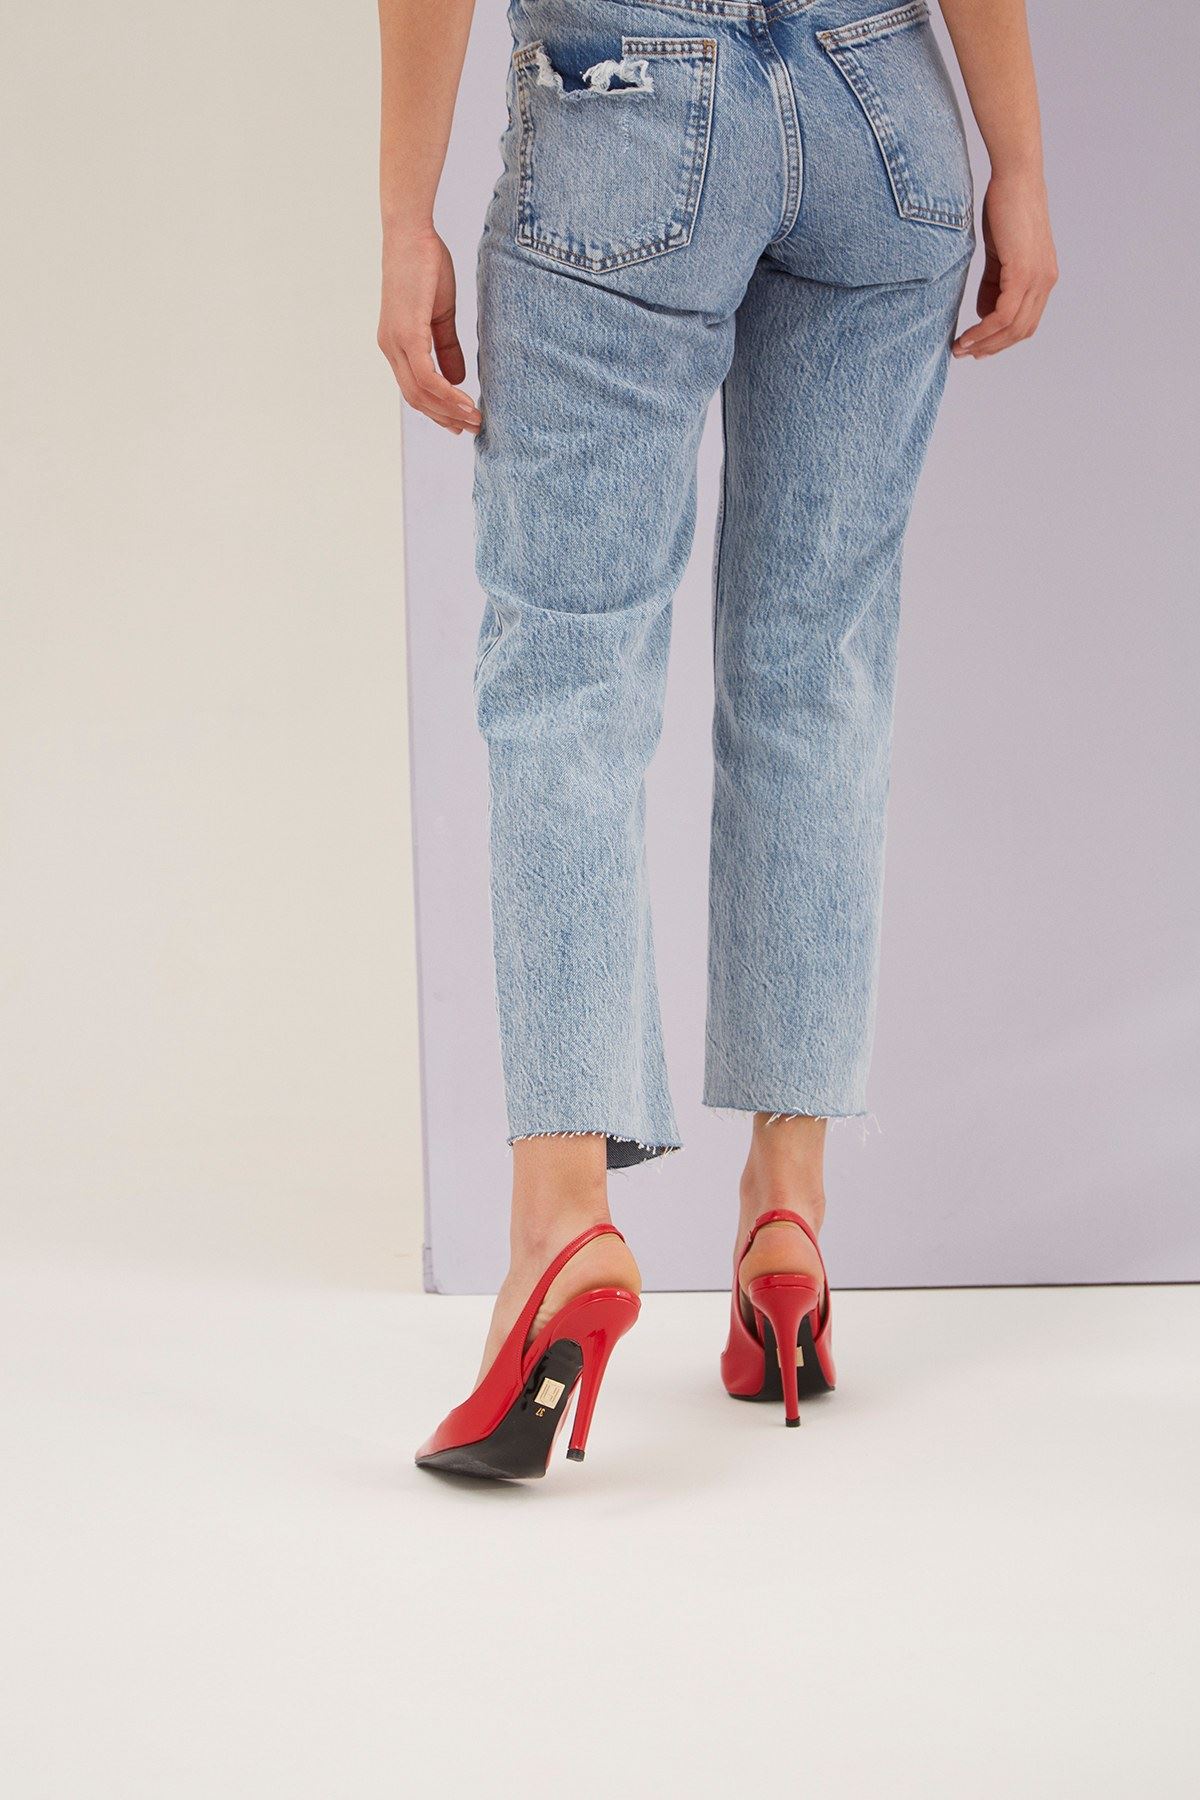 Mia Crvene Lakovane Ženske cipele - visoka štikla #0046